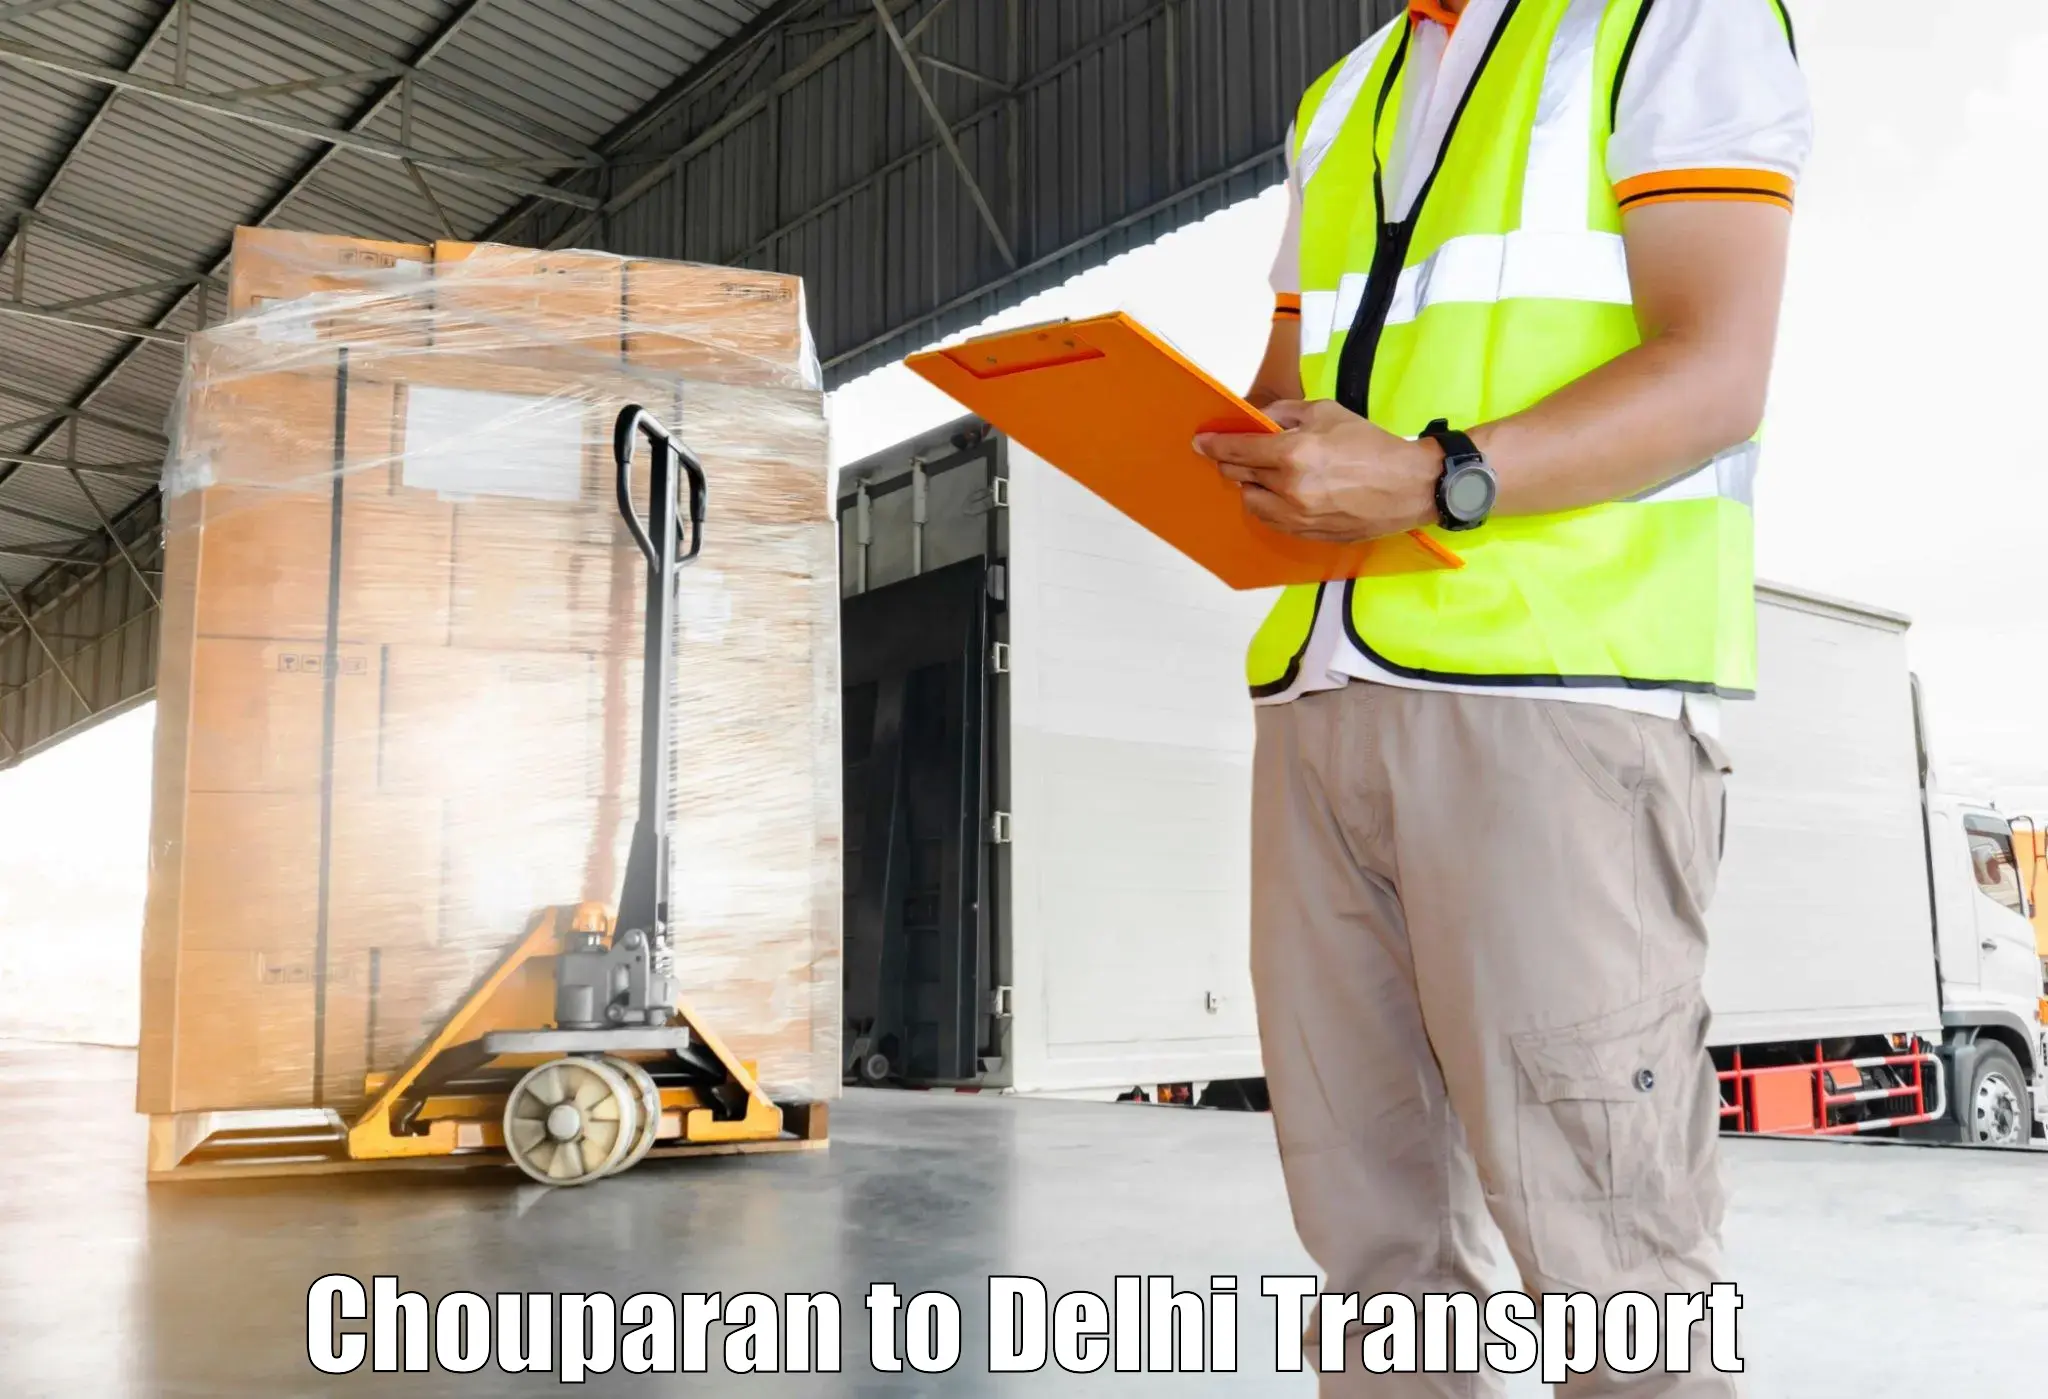 Shipping partner in Chouparan to Kalkaji